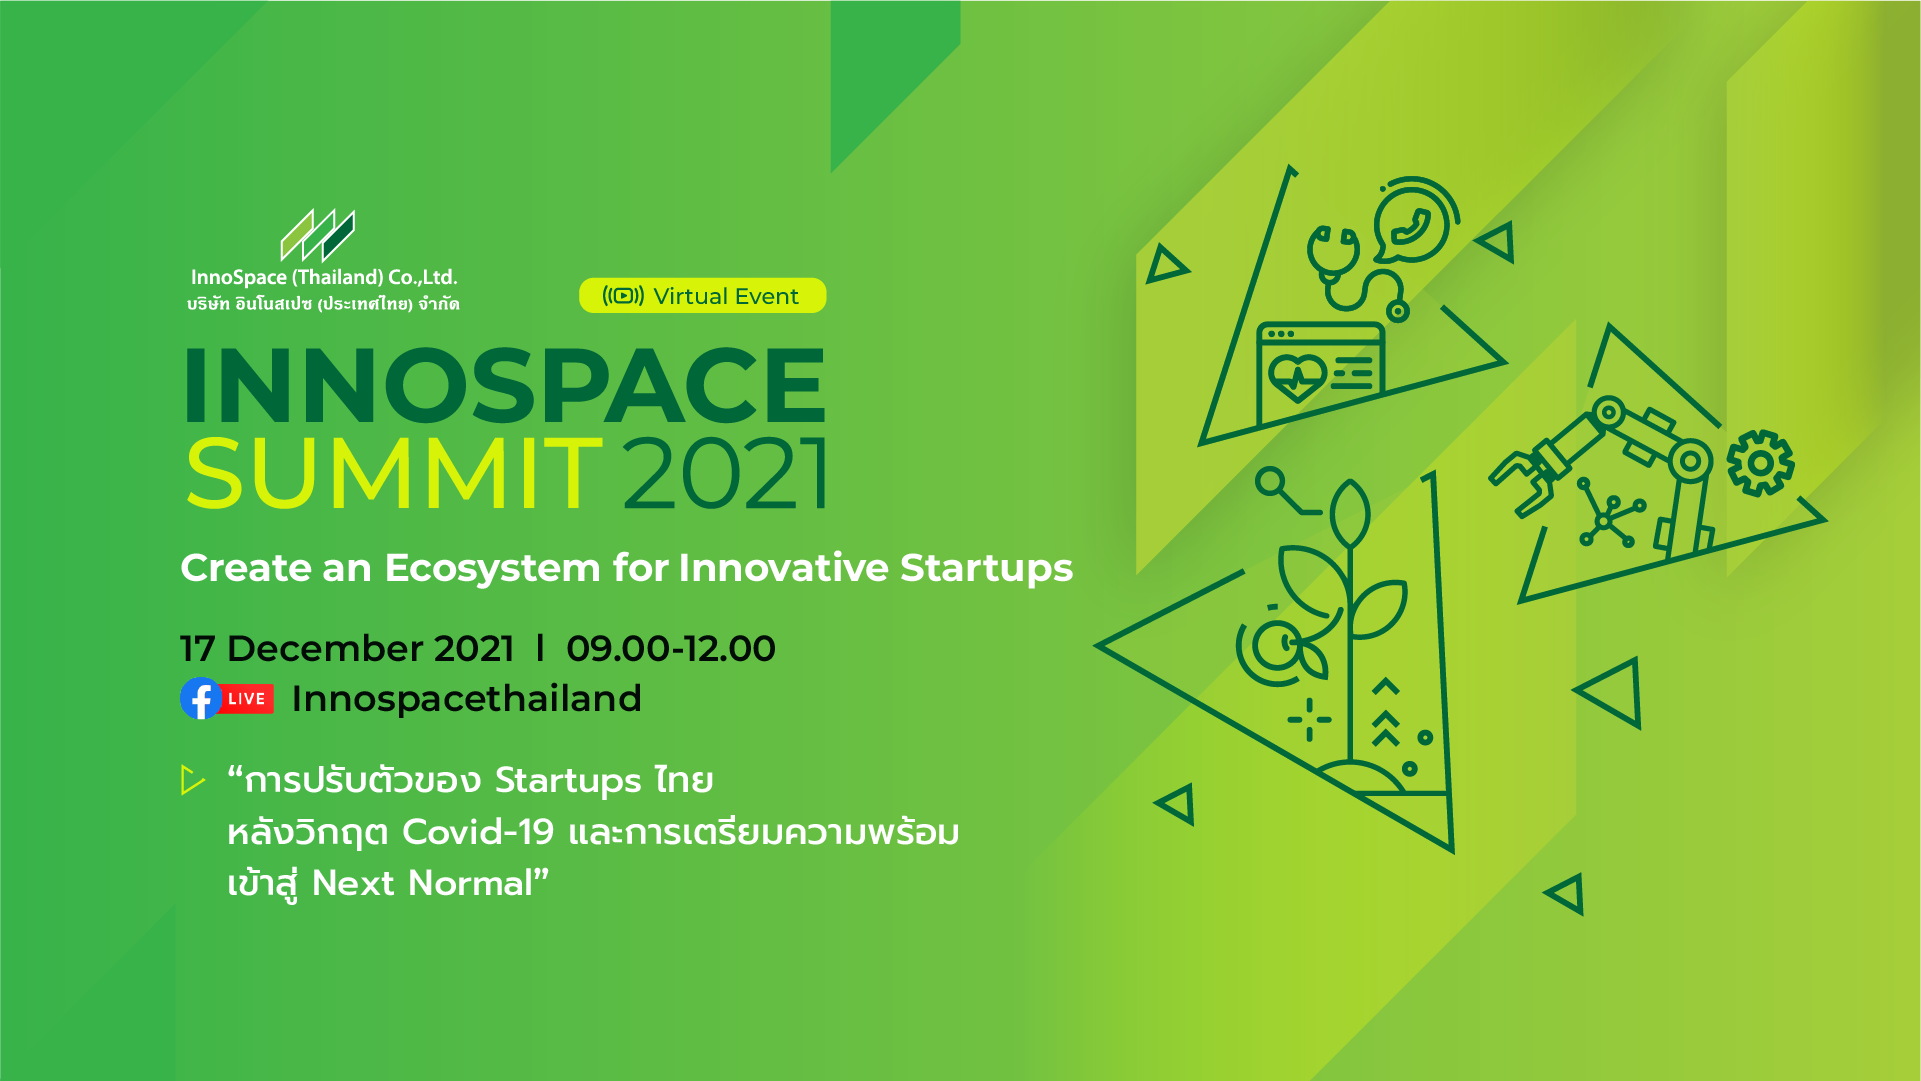 อินโนสเปซ จัดงาน InnoSpace Summit 2021 รูปแบบออนไลน์  ชูวิสัยทัศน์เดินหน้าลงทุนใน Deep Tech Startup ควบคู่พัฒนา Startup Ecosystem ของประเทศให้เติบโตอย่างยั่งยืน